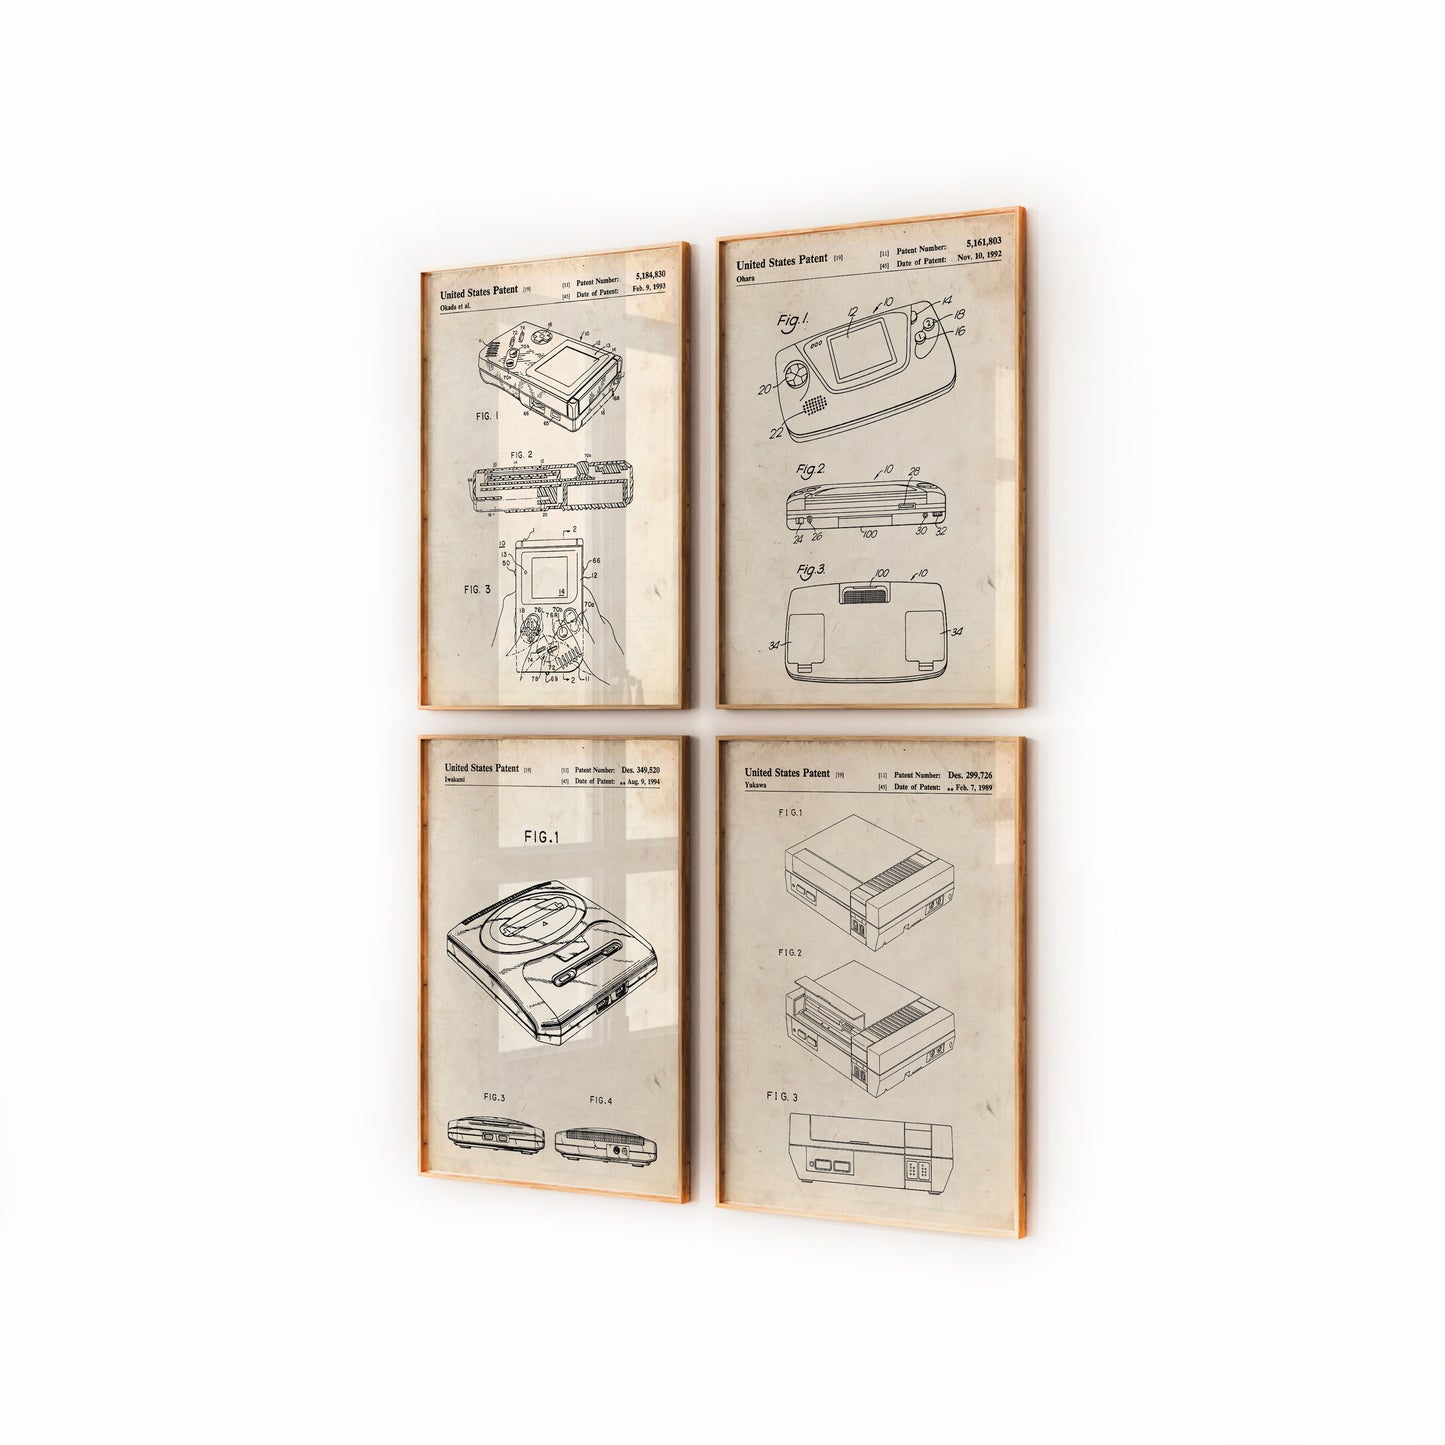 Gamer Set Of 4 Patent Prints - Magic Posters